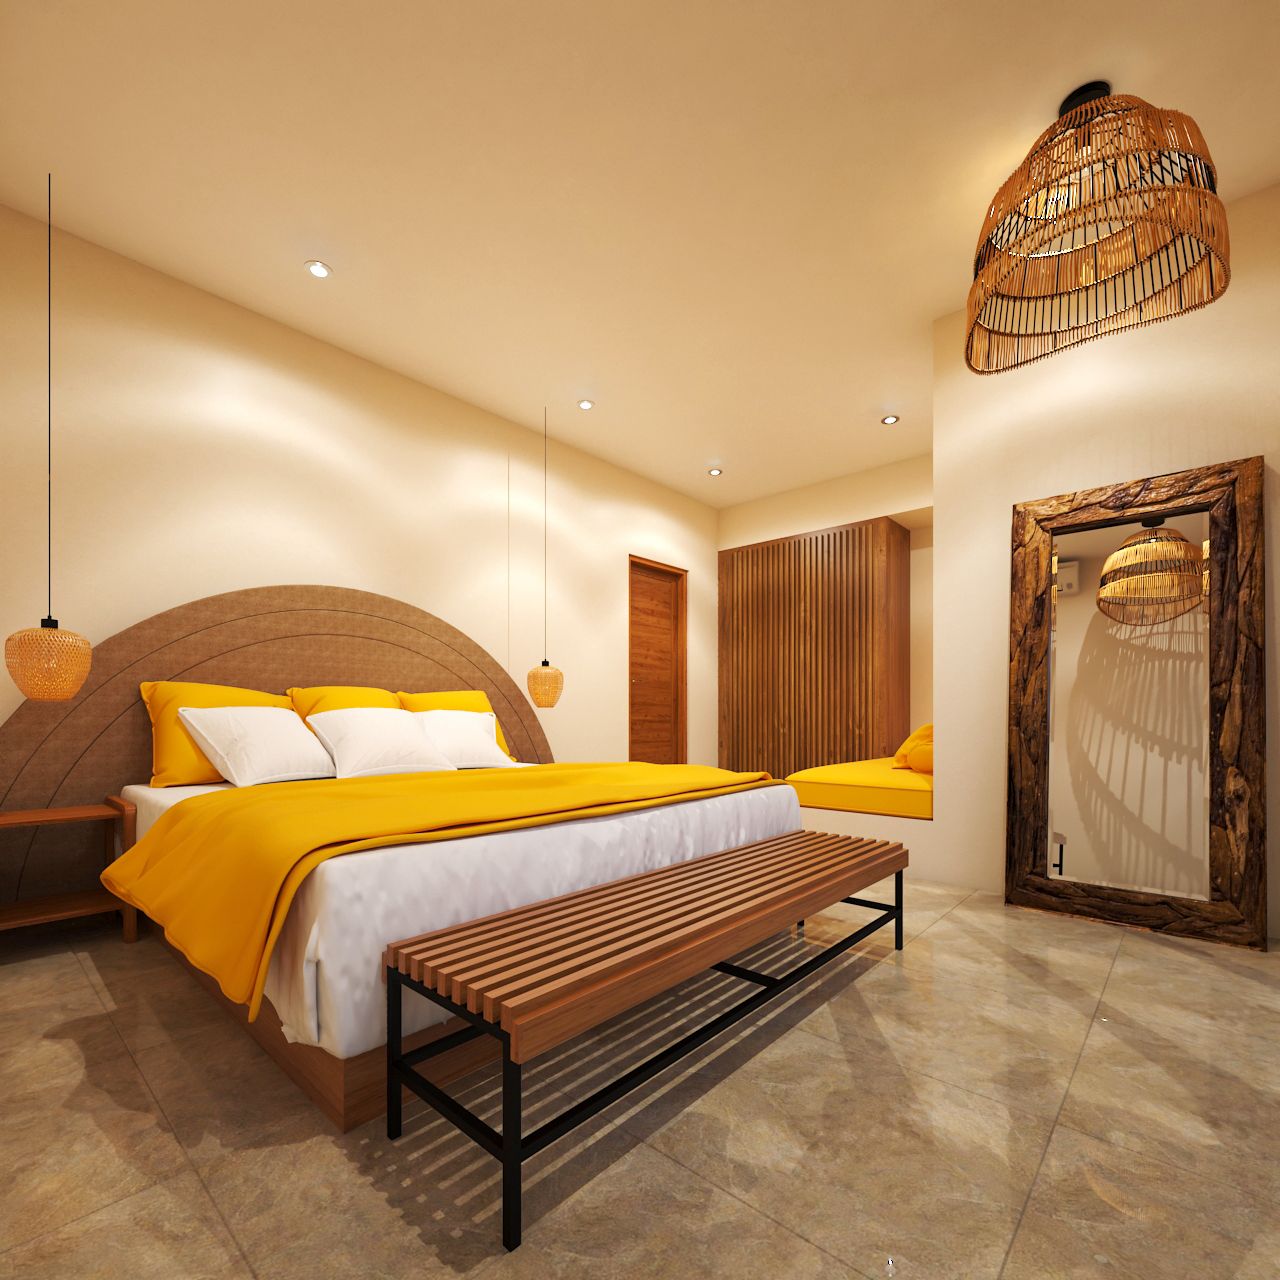 Canggu,Bali,Indonesia,2 Bedrooms,2 Bathrooms,Villa,MLS ID 1424